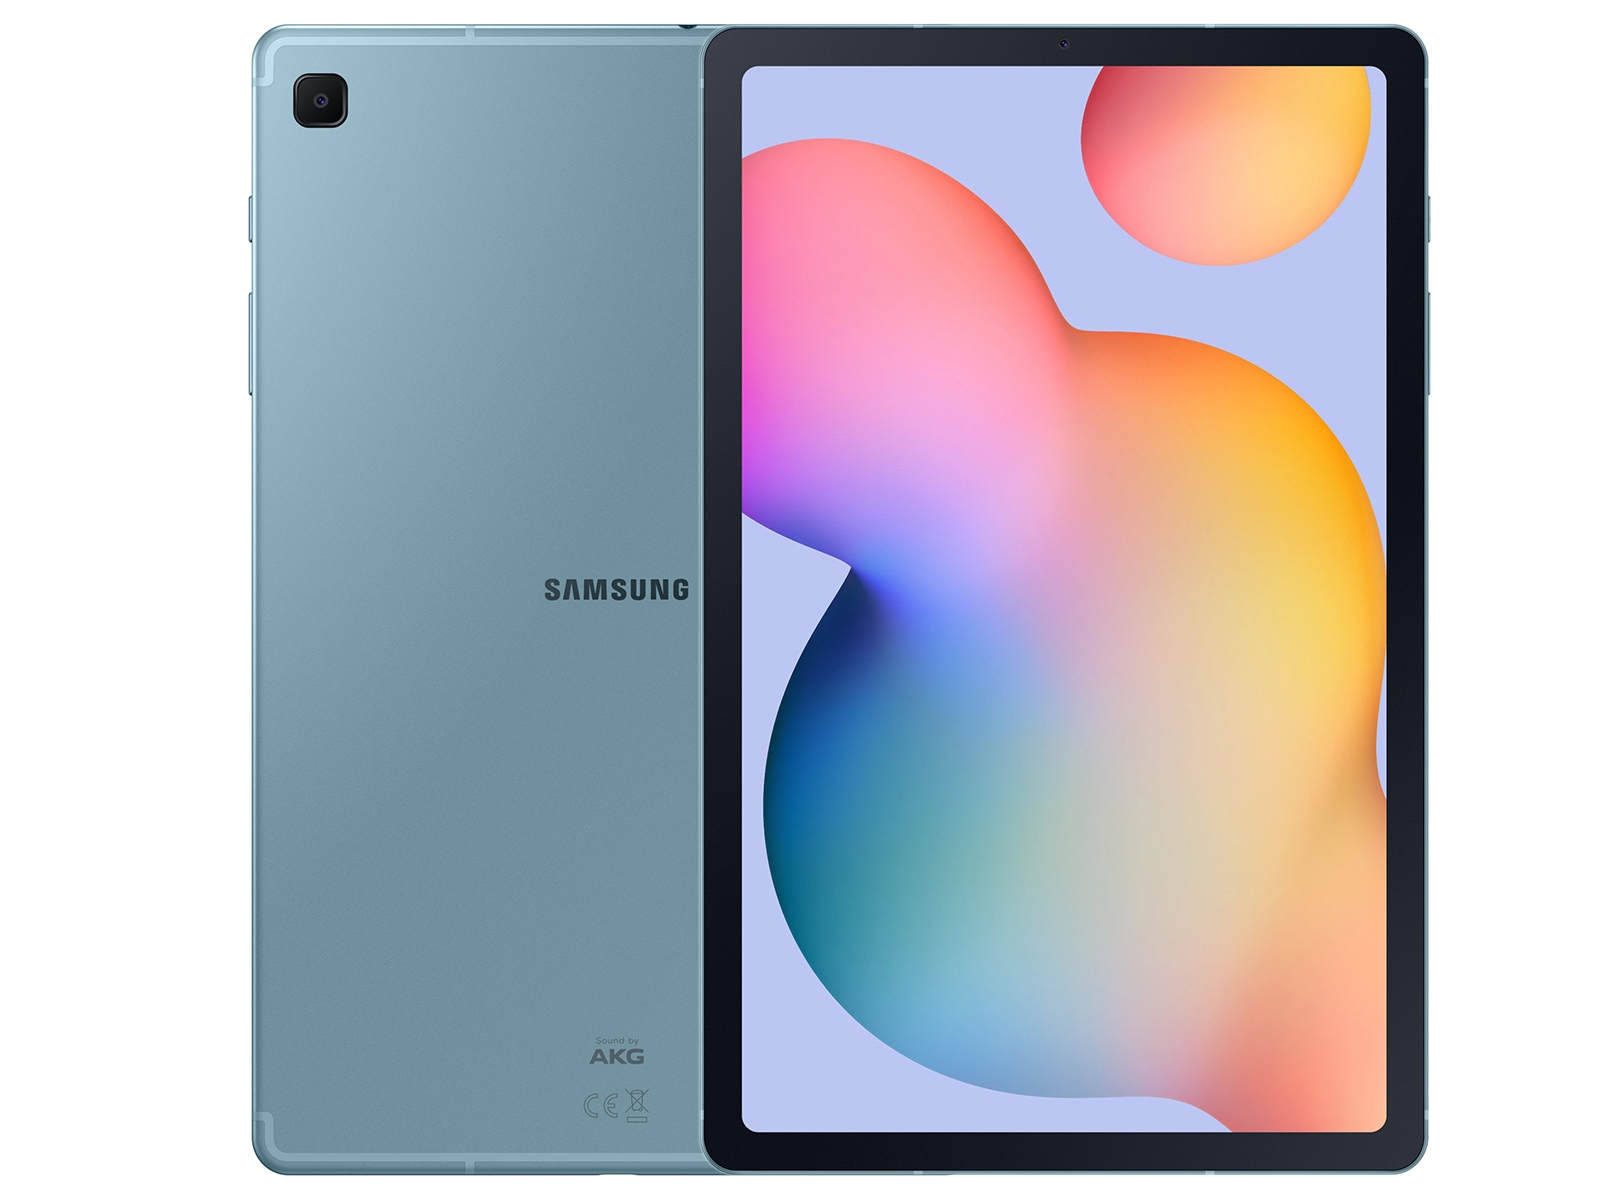 Galaxy Tab A 10.1 2019 32GB Silver Wi Fi Tablets - SM-T510NZSAXAR 